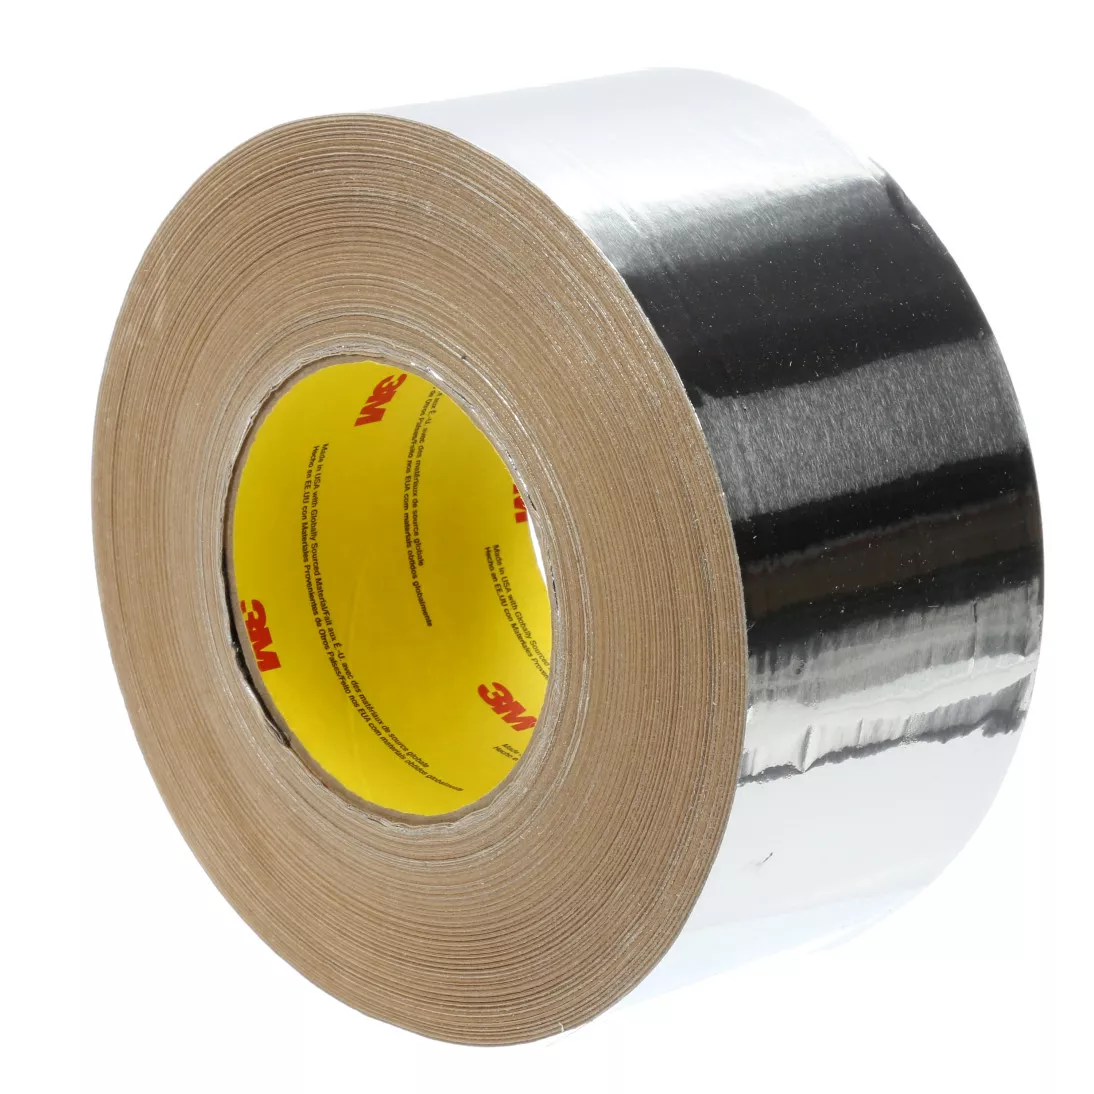 3M™ Venture Tape™ Aluminum Foil Tape 1521CW, Silver, 99 mm x 45.7 m, 2.8
mil, 12 rolls per case